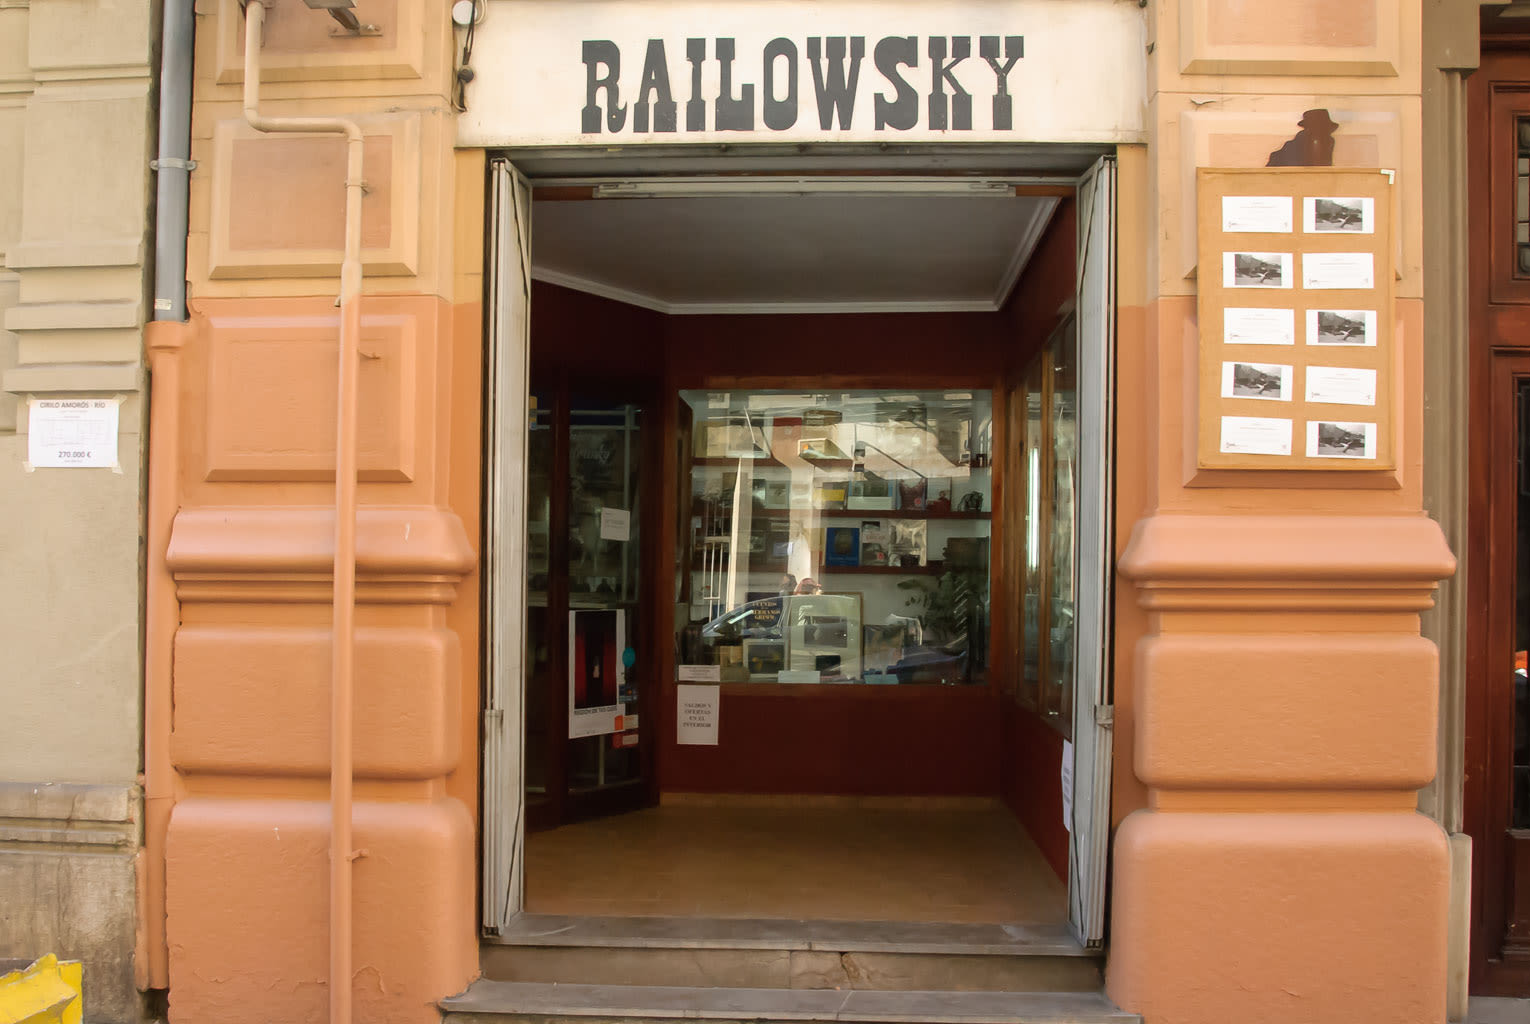 Railowsky